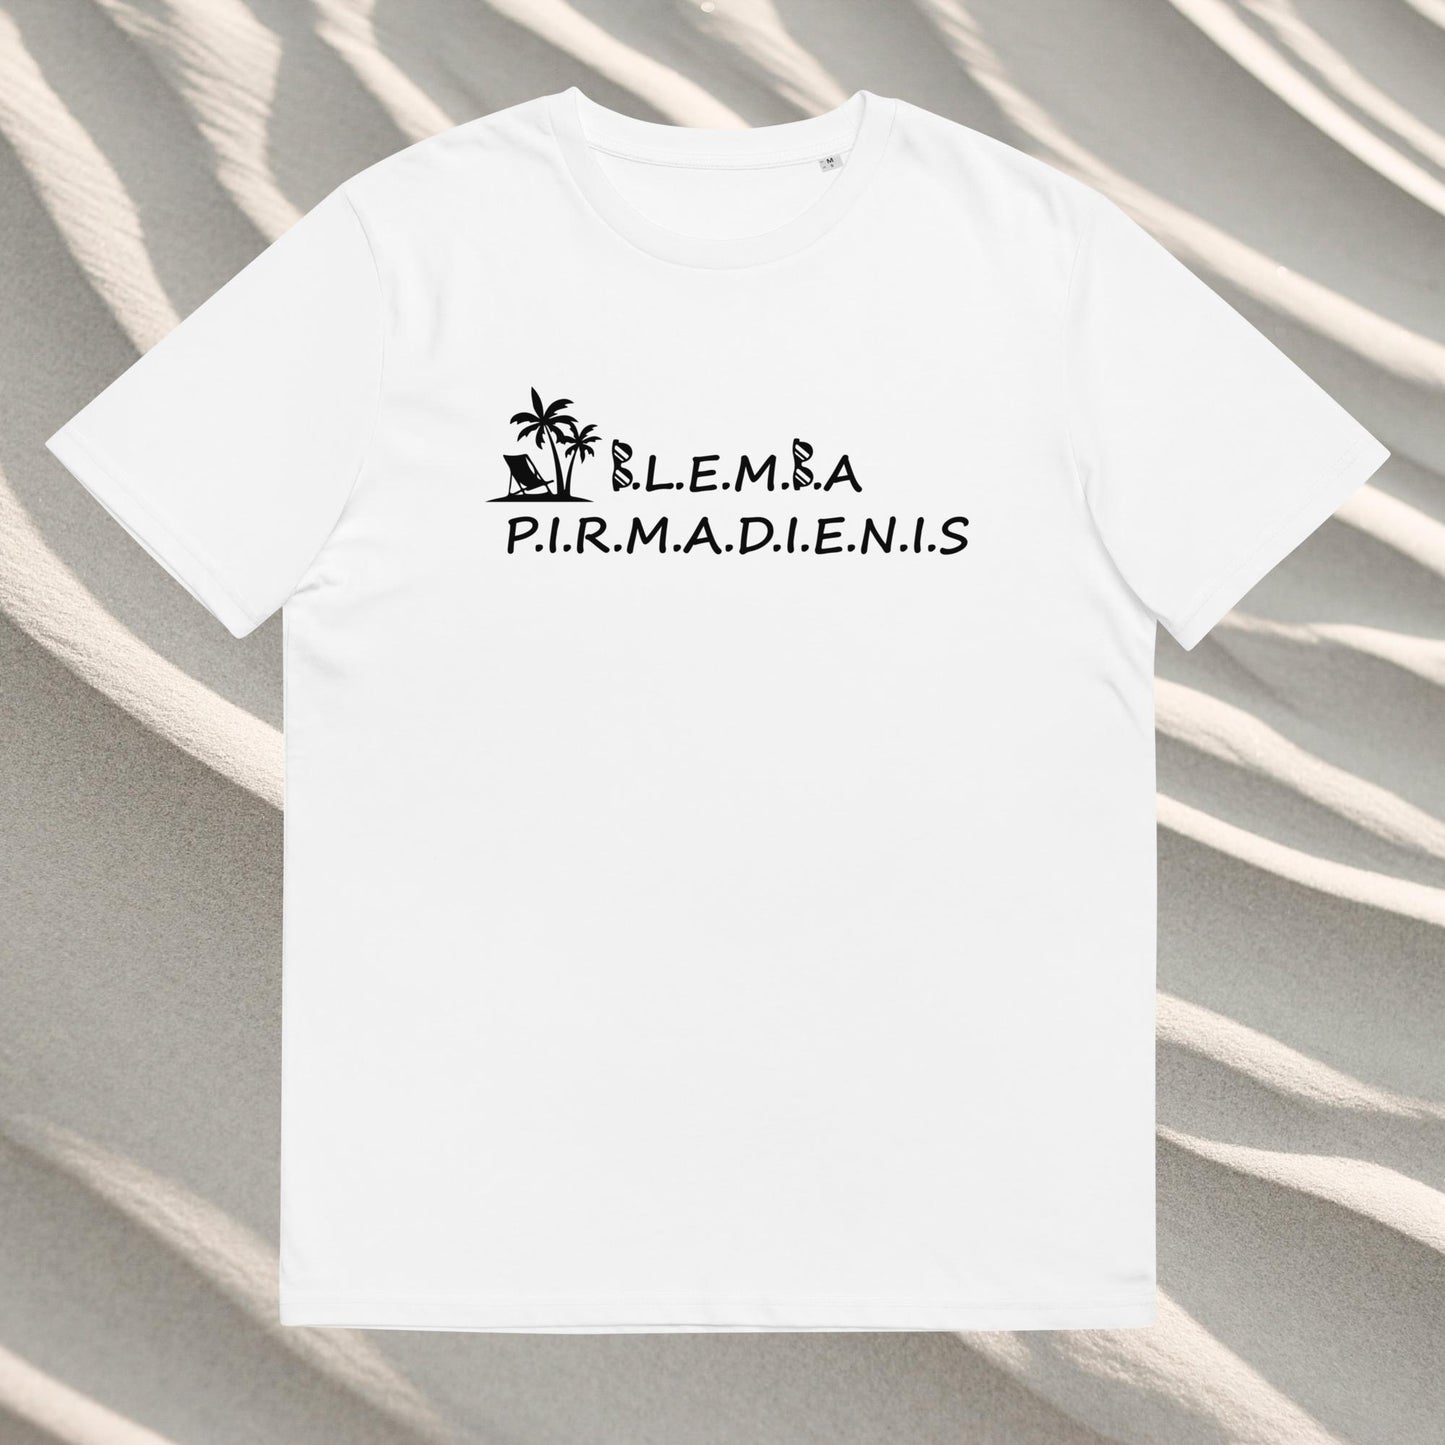 Organic cotton unisex t-shirt: Blemba Monday